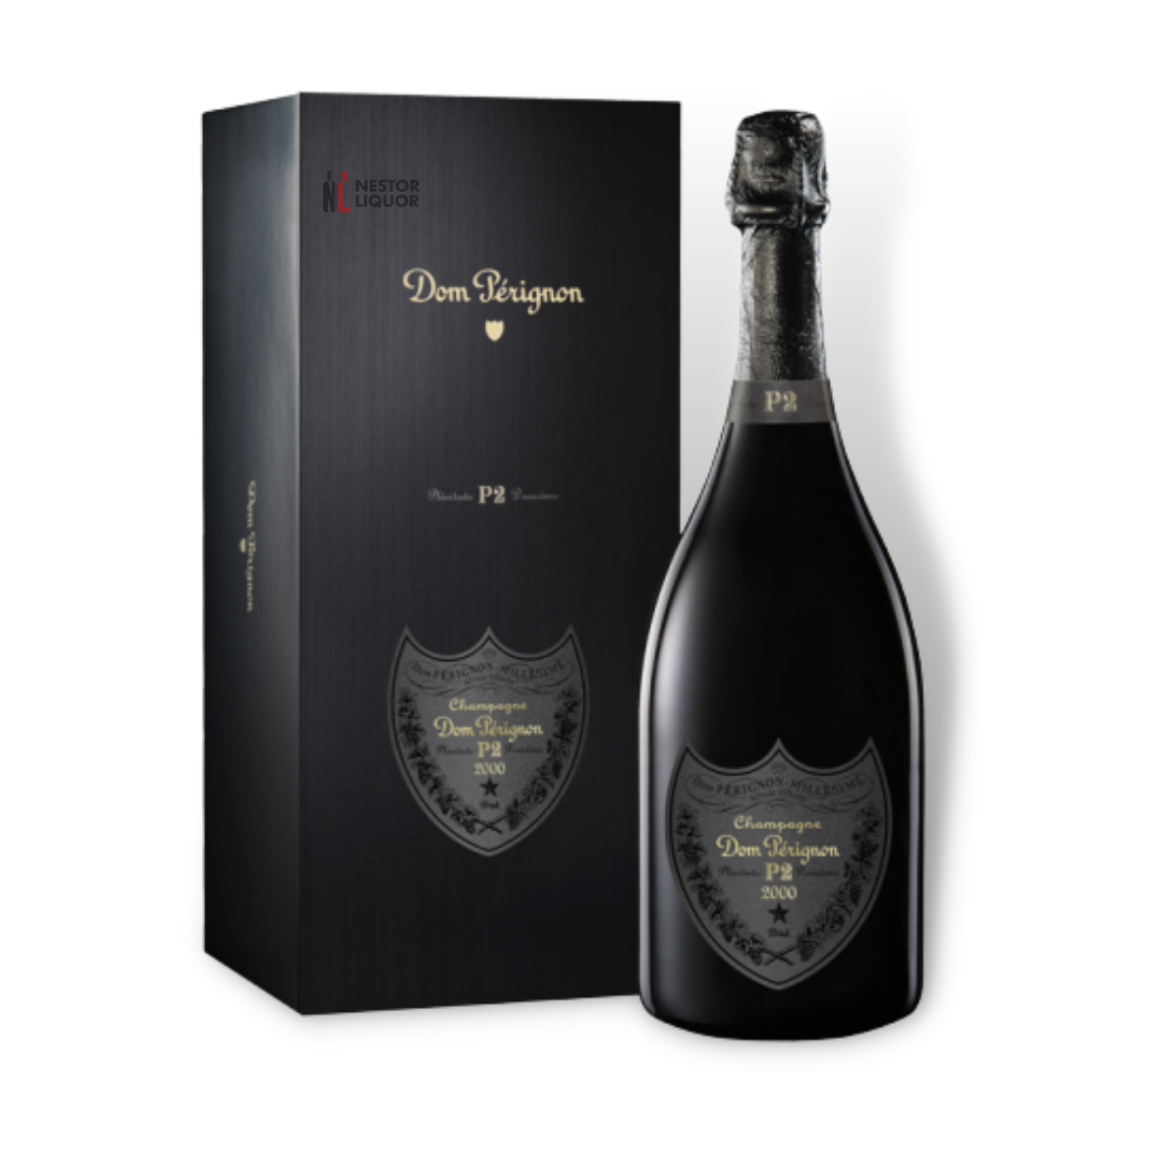 Buy Veuve Clicquot Rich Champagne online